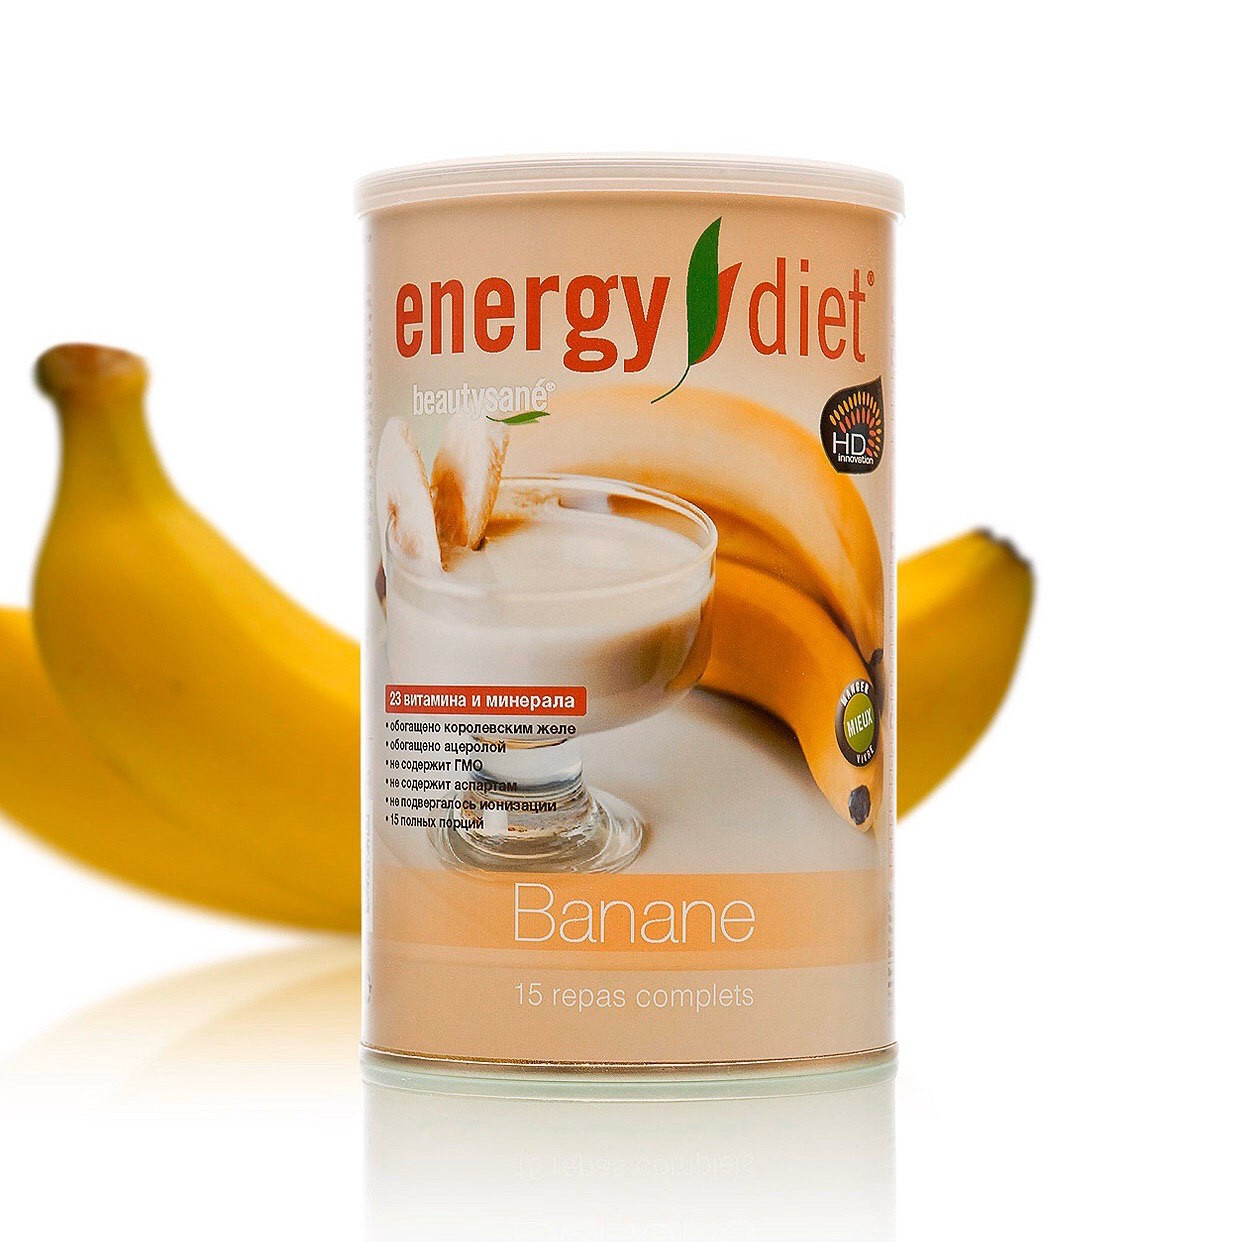 

Коктейль для похудения Energy Diet. Функциональное питание Енерджи диет со вкусом банан